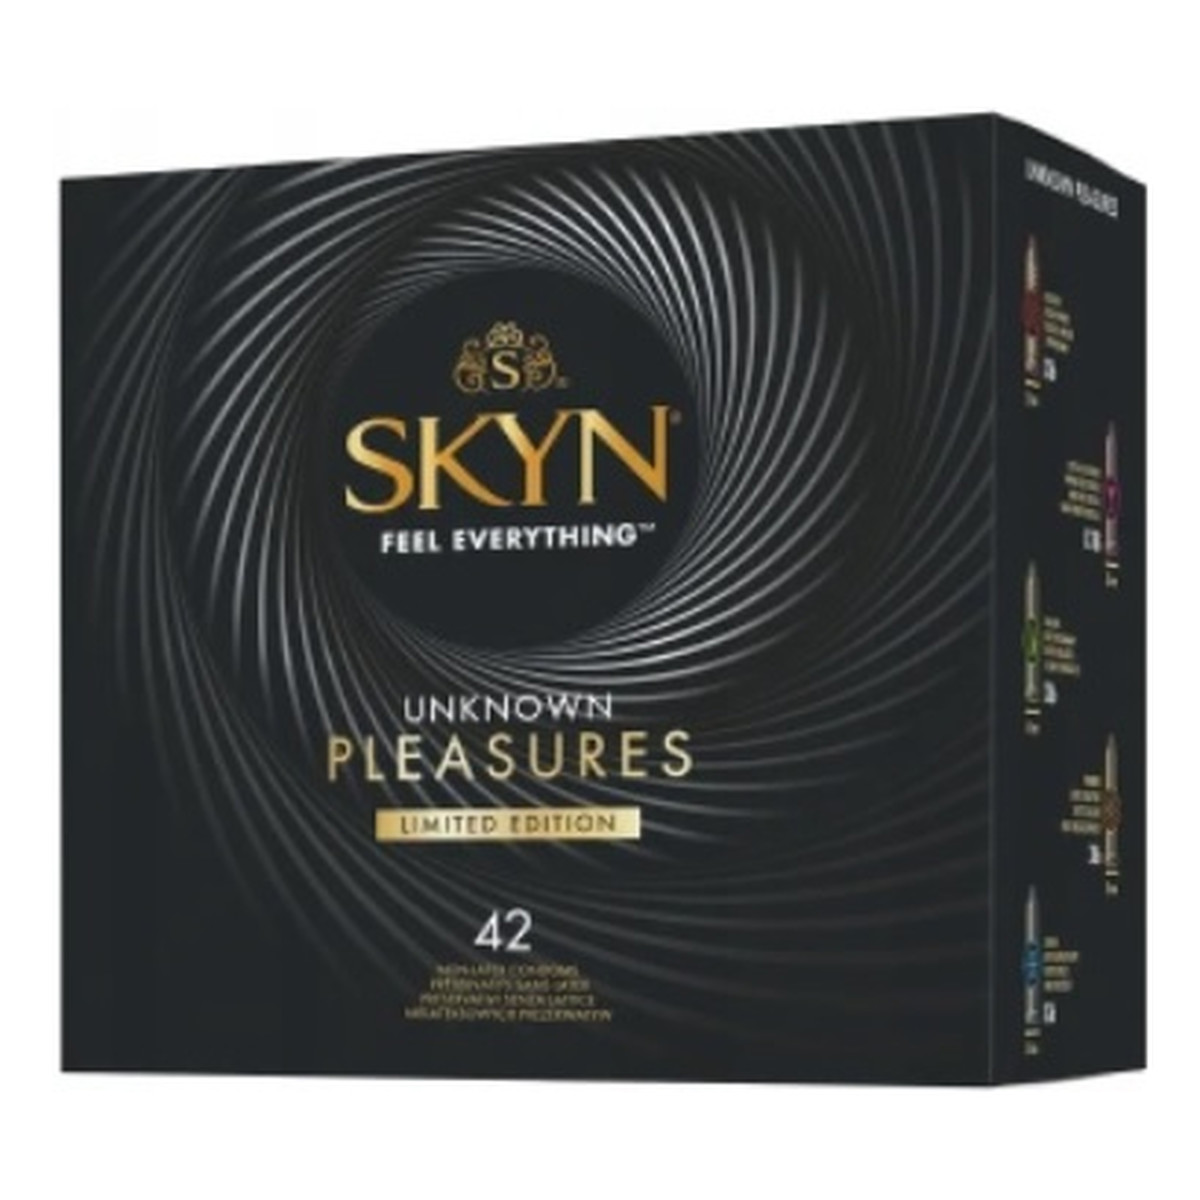 Unimil Skyn unknown pleasures limited edition nielateksowe prezerwatywy mix 42szt.